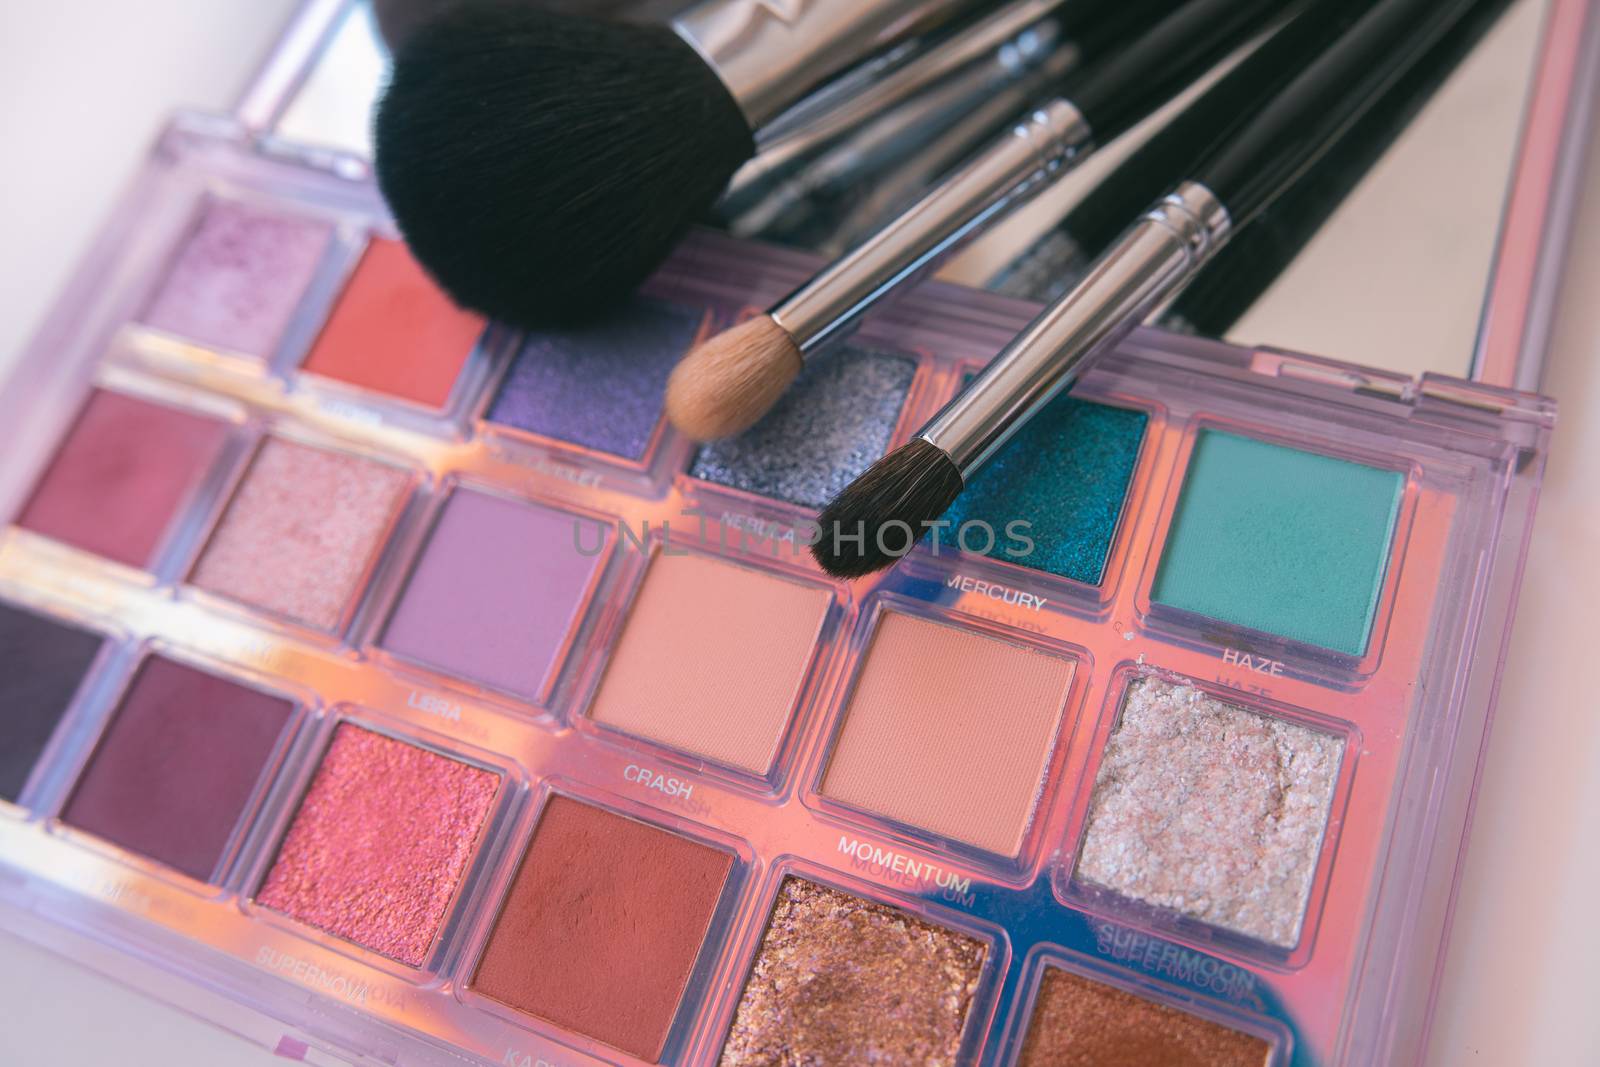 Makeup cosmetics tools  by tadeush89